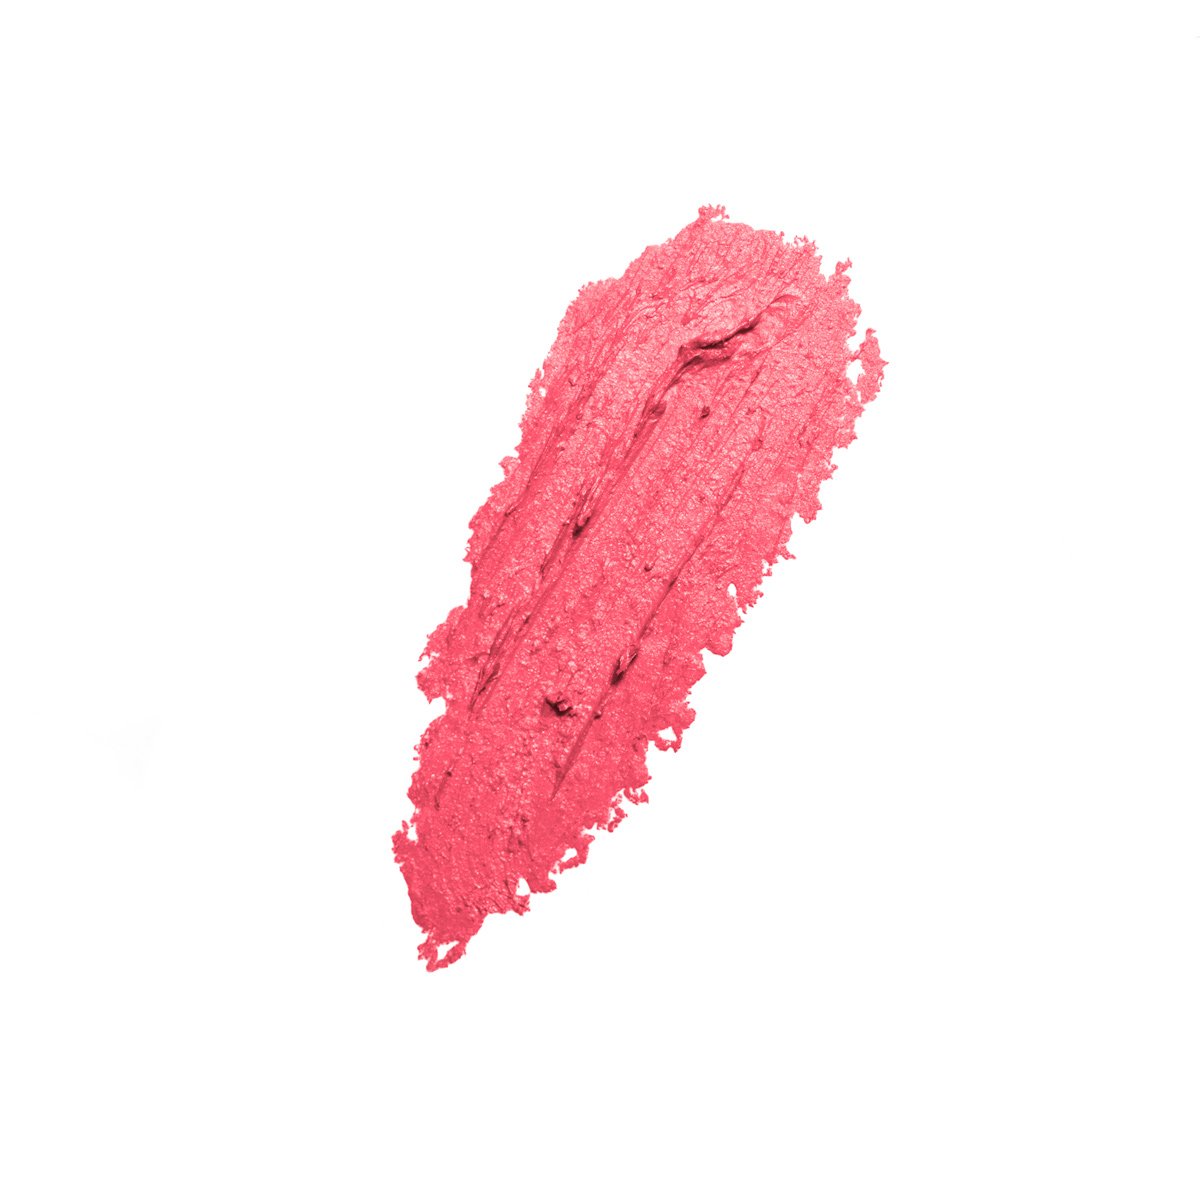 A LA MODE - Bright Coral - bright coral long-wearing matte lipstick